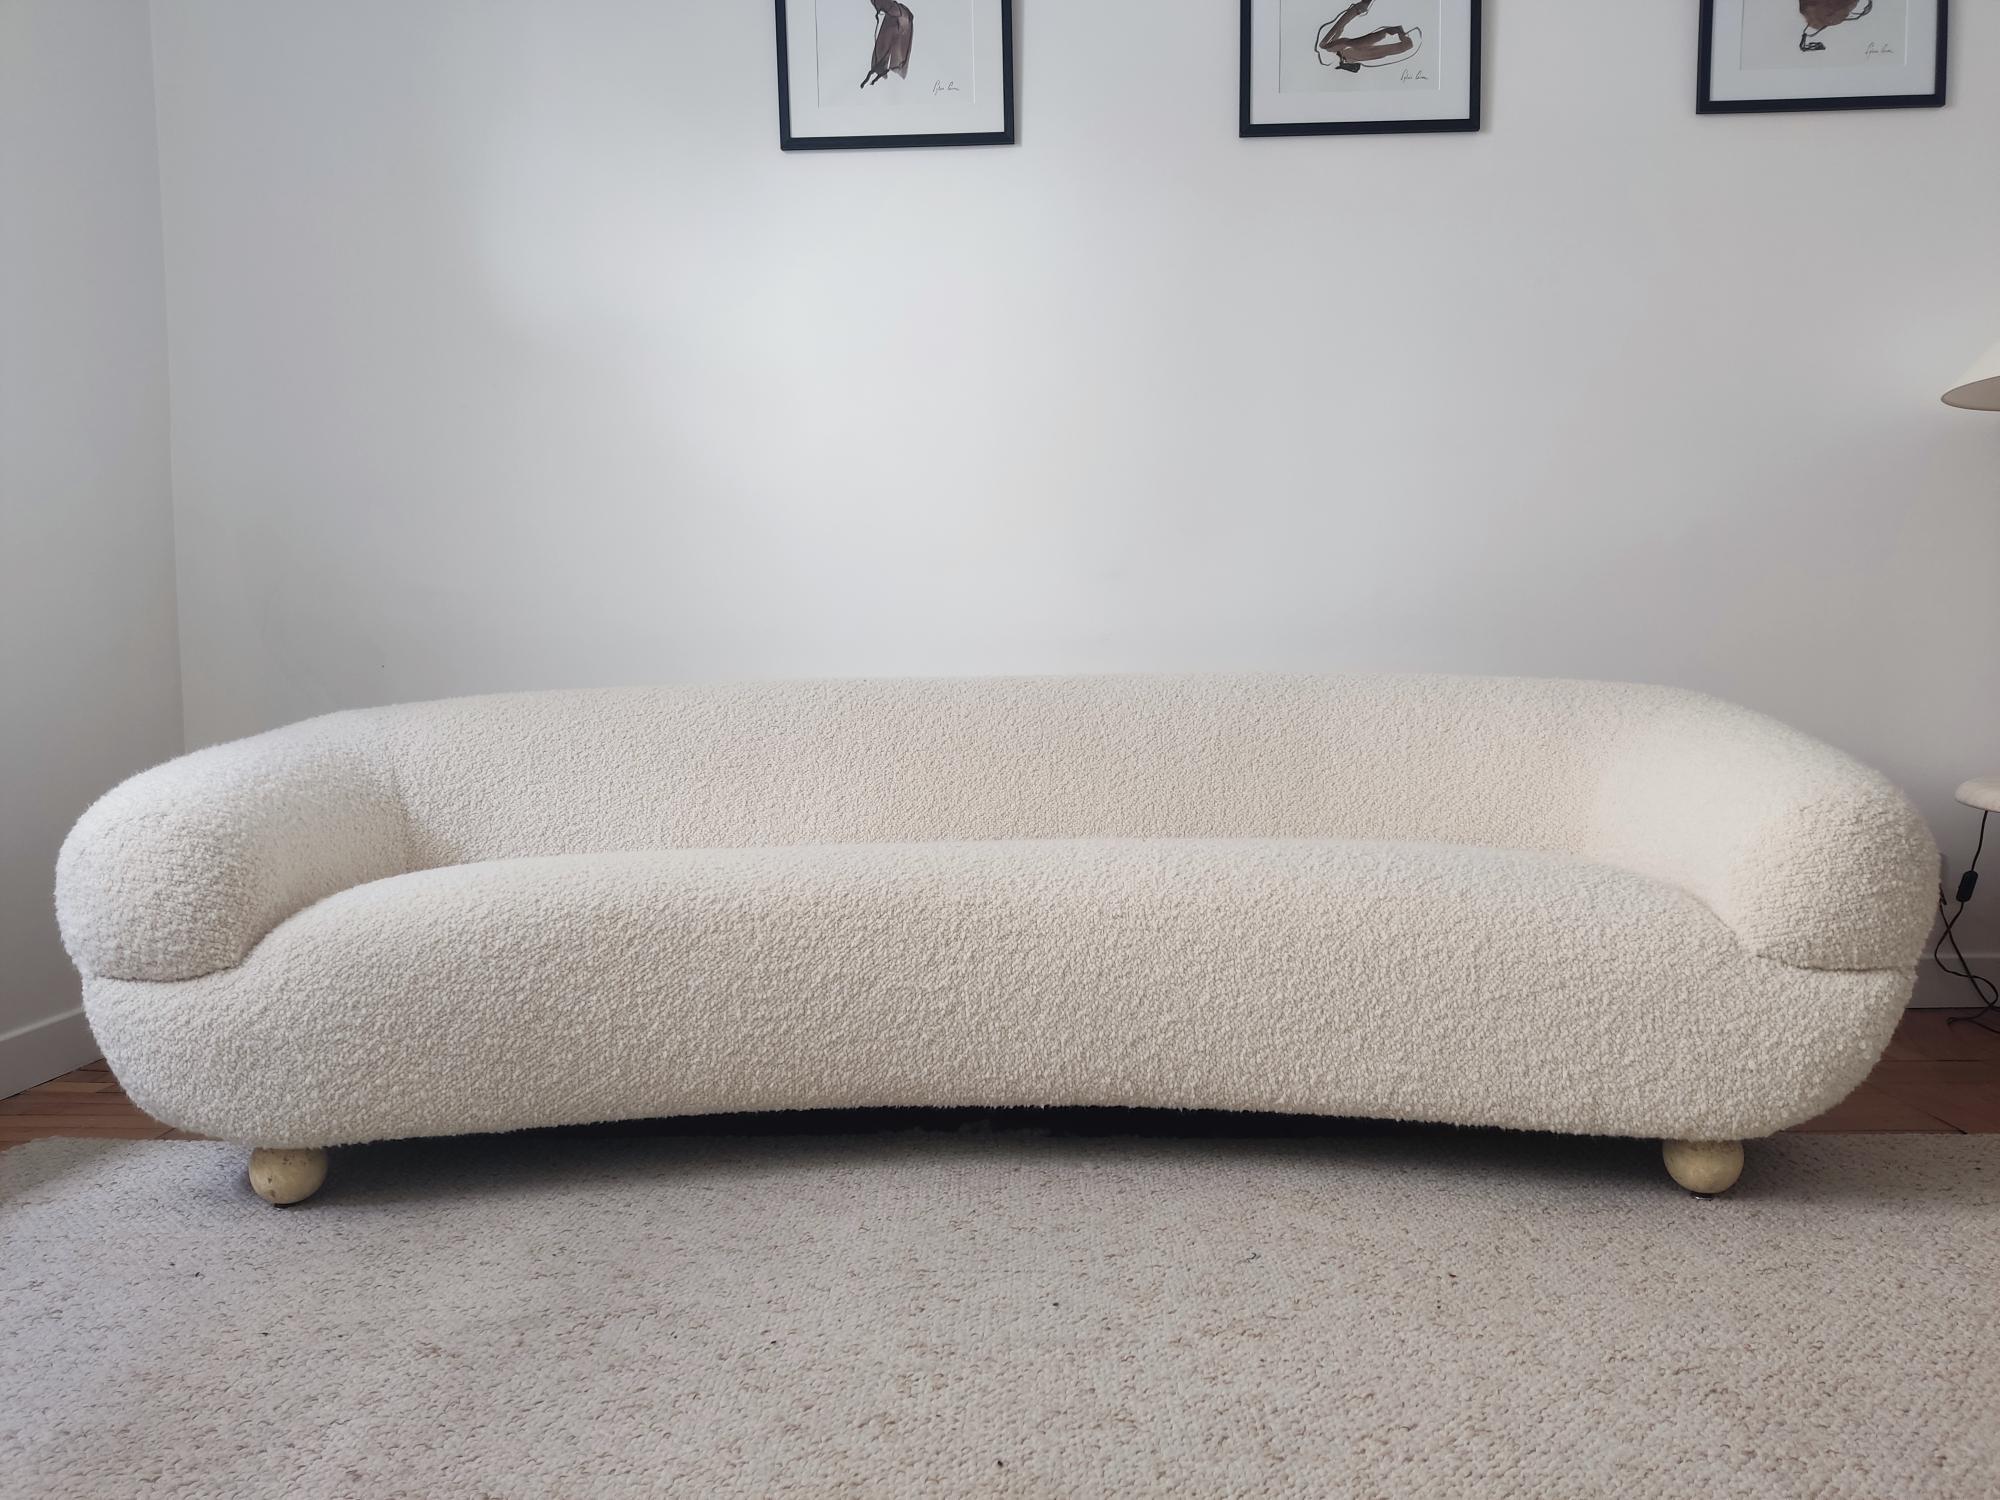 Vollständig restauriertes, geschwungenes italienisches Sofa aus den 60er Jahren mit warmem und elegantem Strukturstoff aus einer englischen Maison. Dieses elegante Sofa ist sehr bequem und verleiht Ihrem Interieur viel Schick. Die Farbe des Stoffes